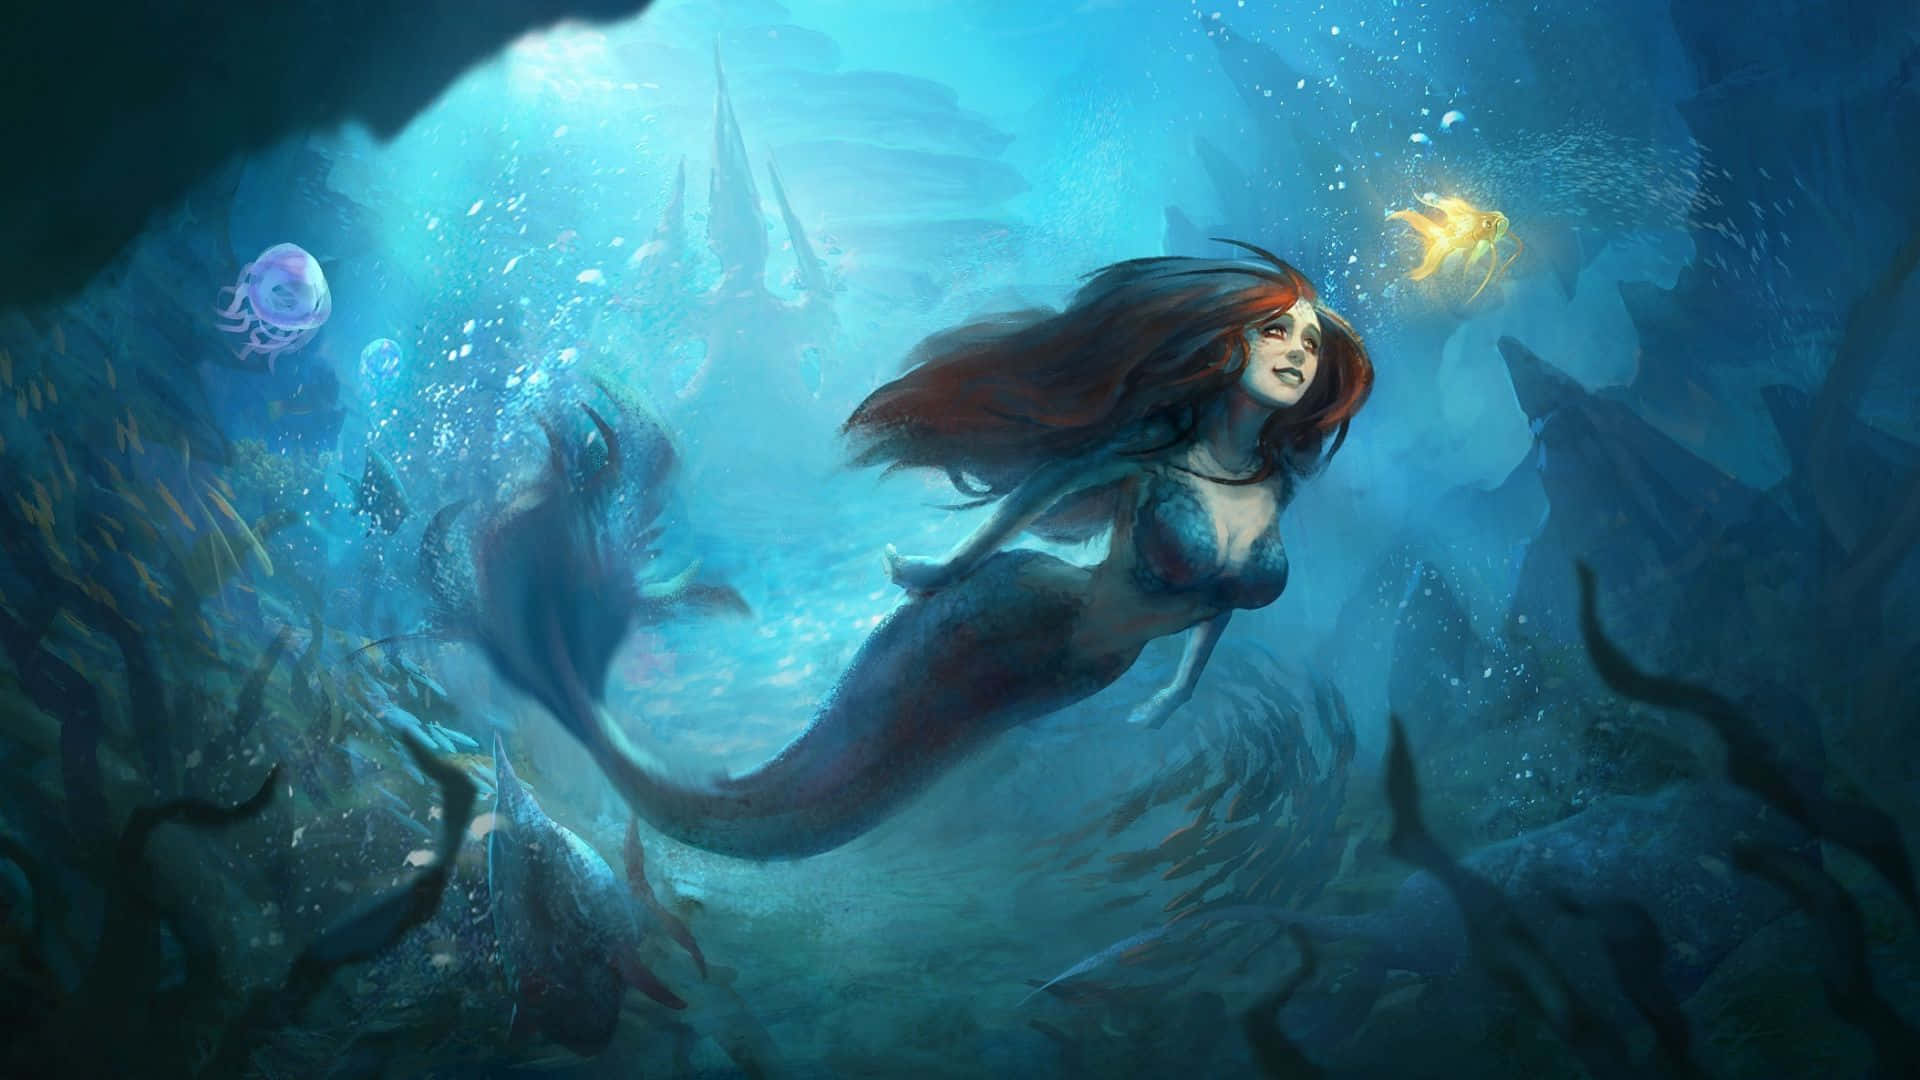 Unabellissima Sirena In Un Incantato Mondo Sottomarino.